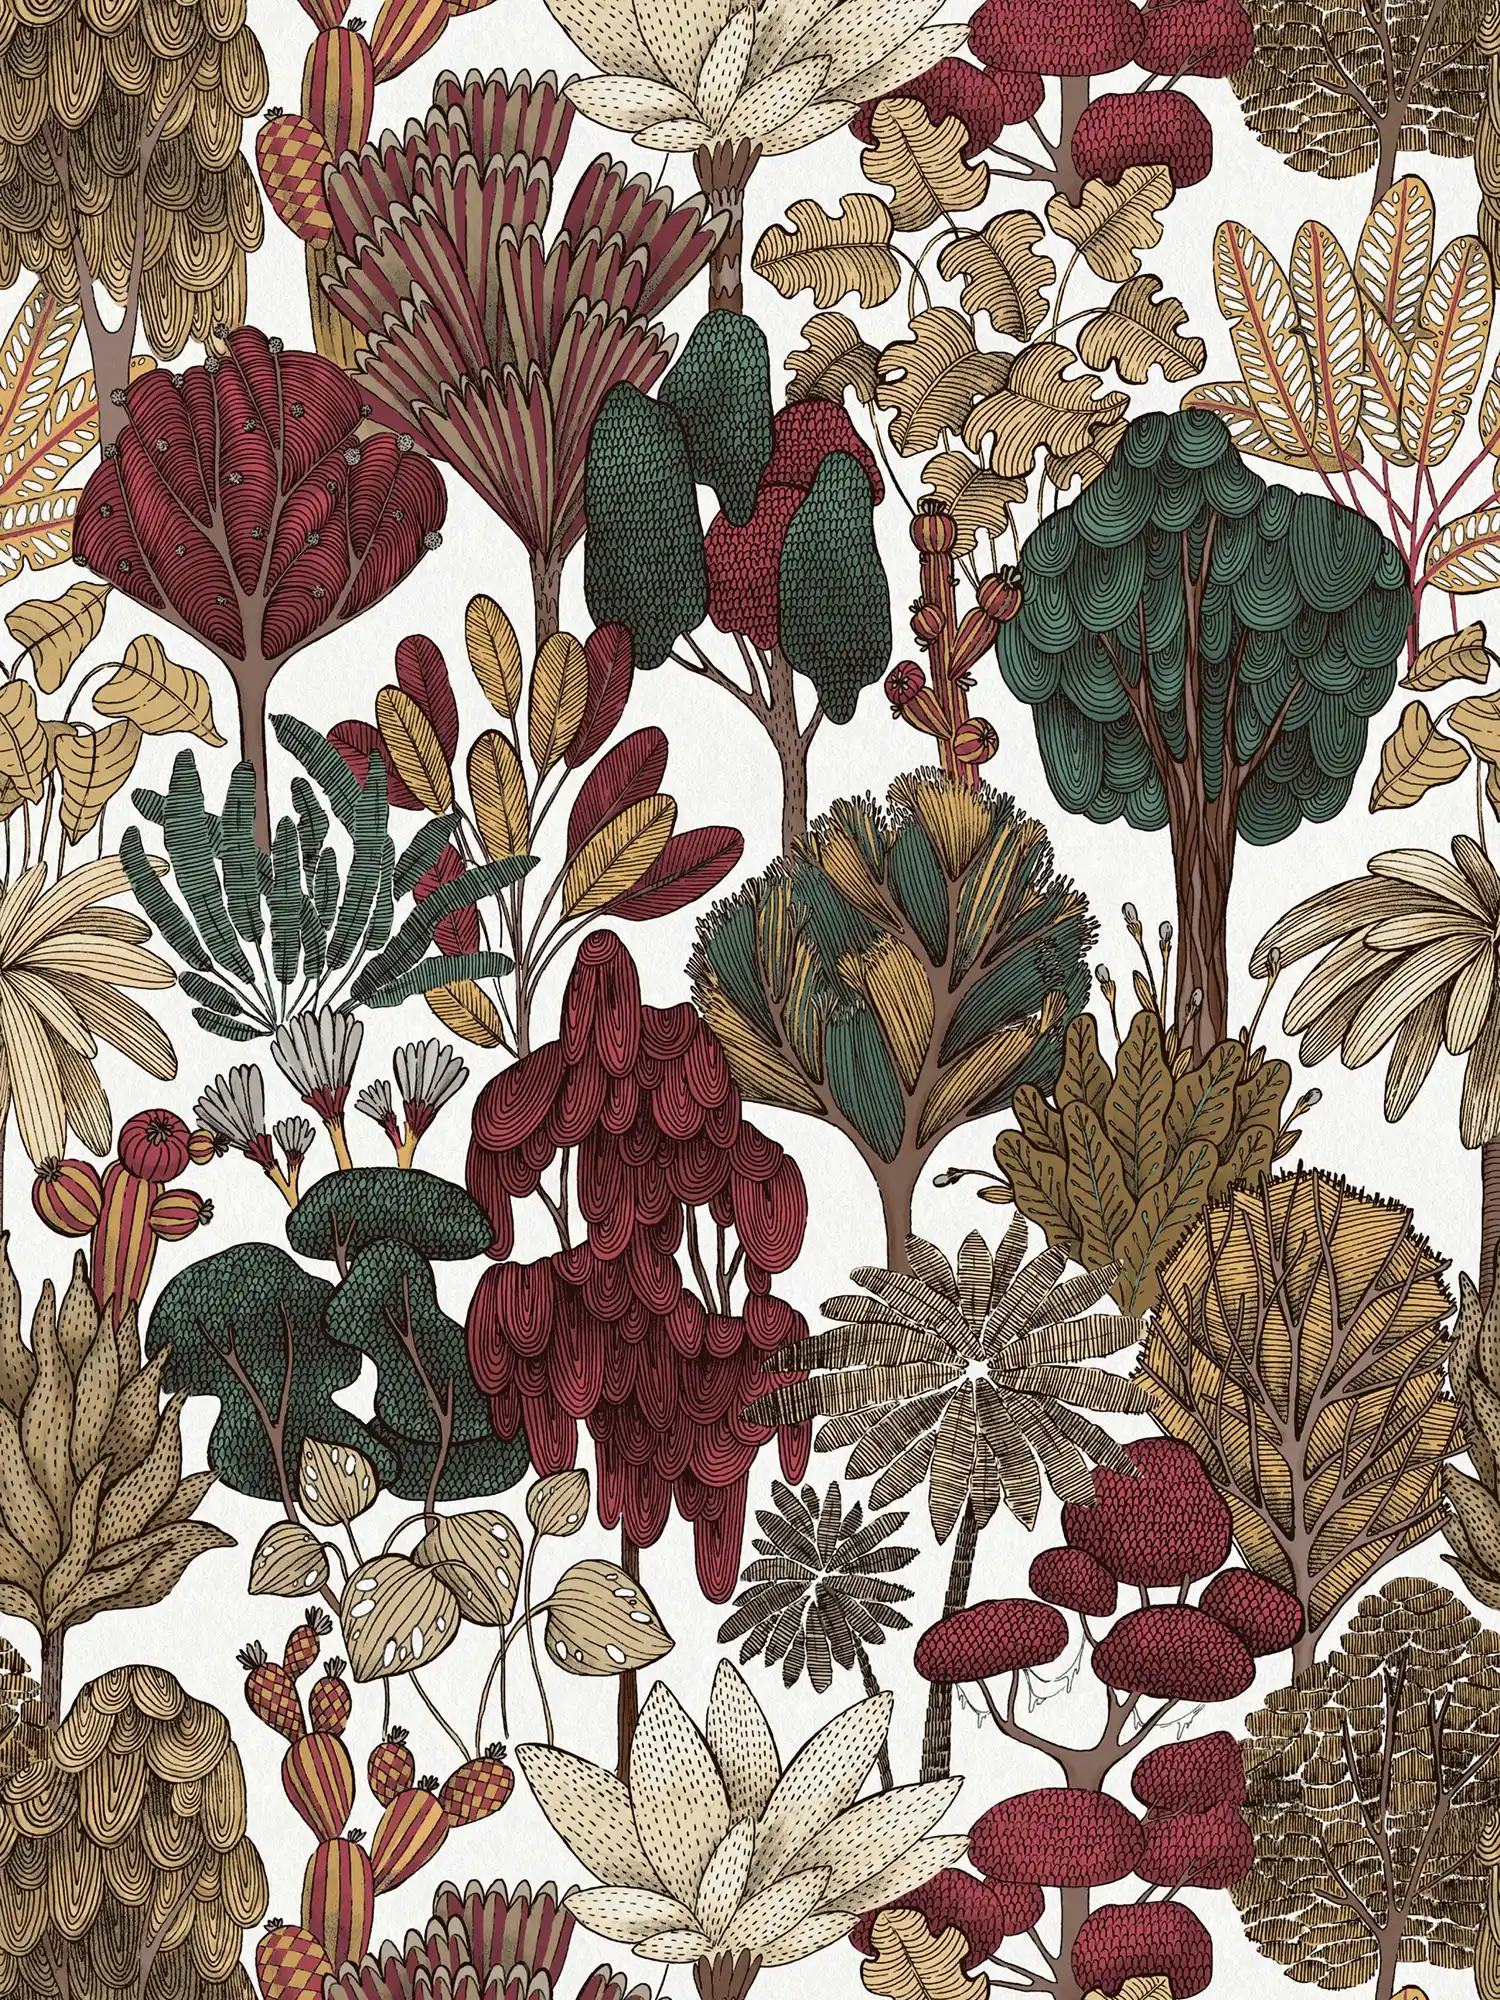 Papier peint moderne floral avec des arbres de style dessin - rouge, beige, marron
